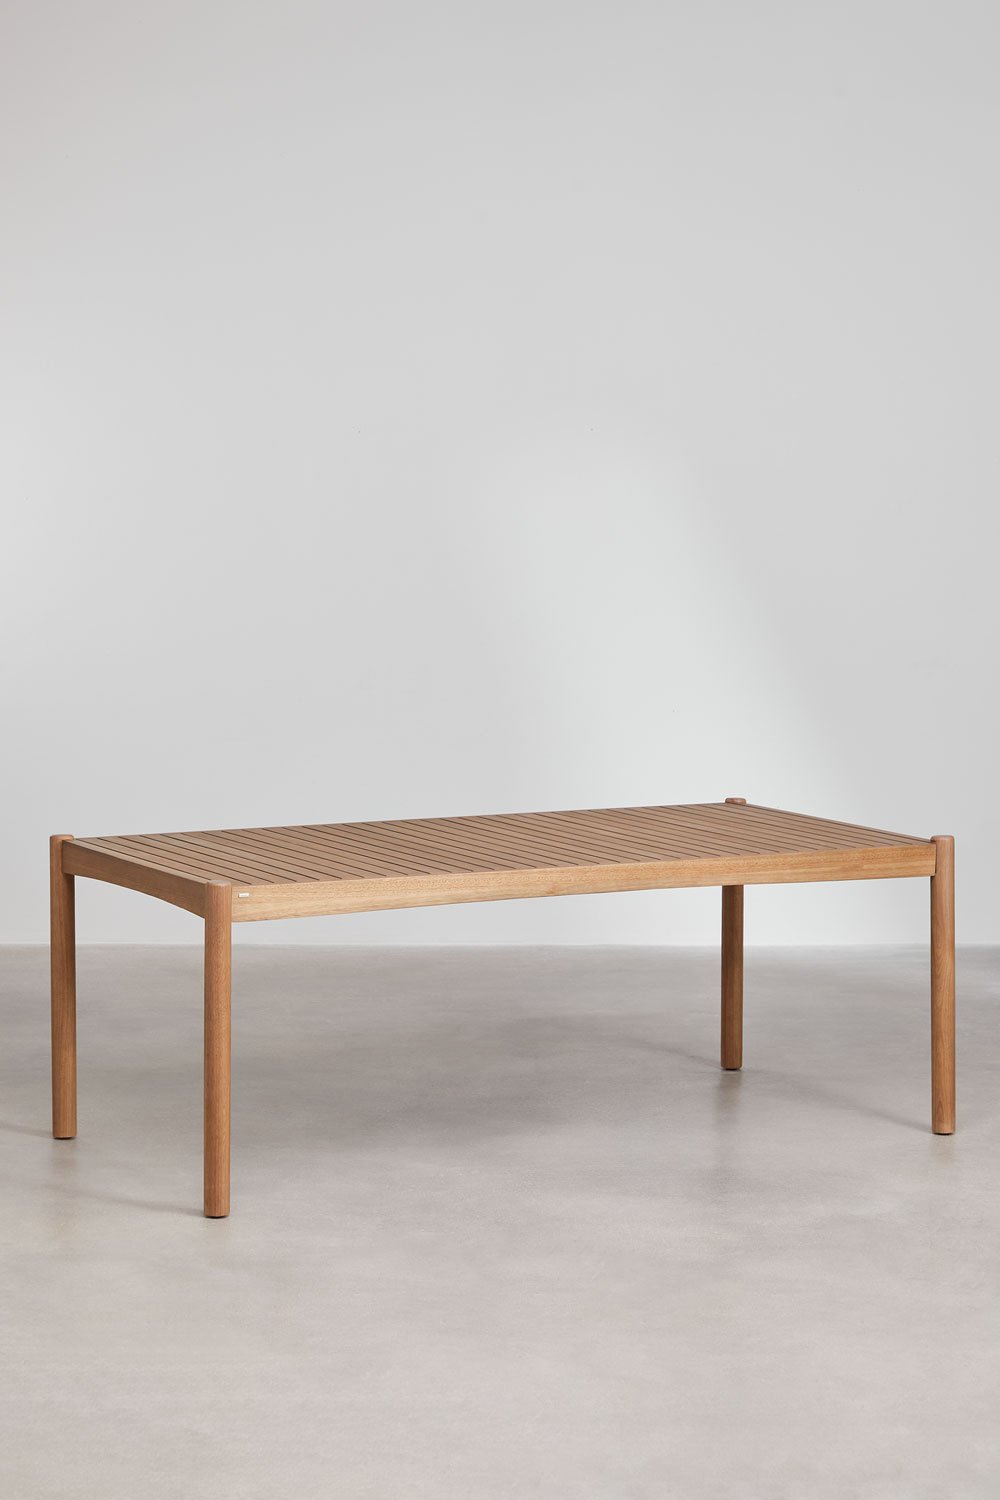 Table de jardin rectangulaire en bois d'eucalyptus (200x100 cm) Aderyn, image de la galerie 1